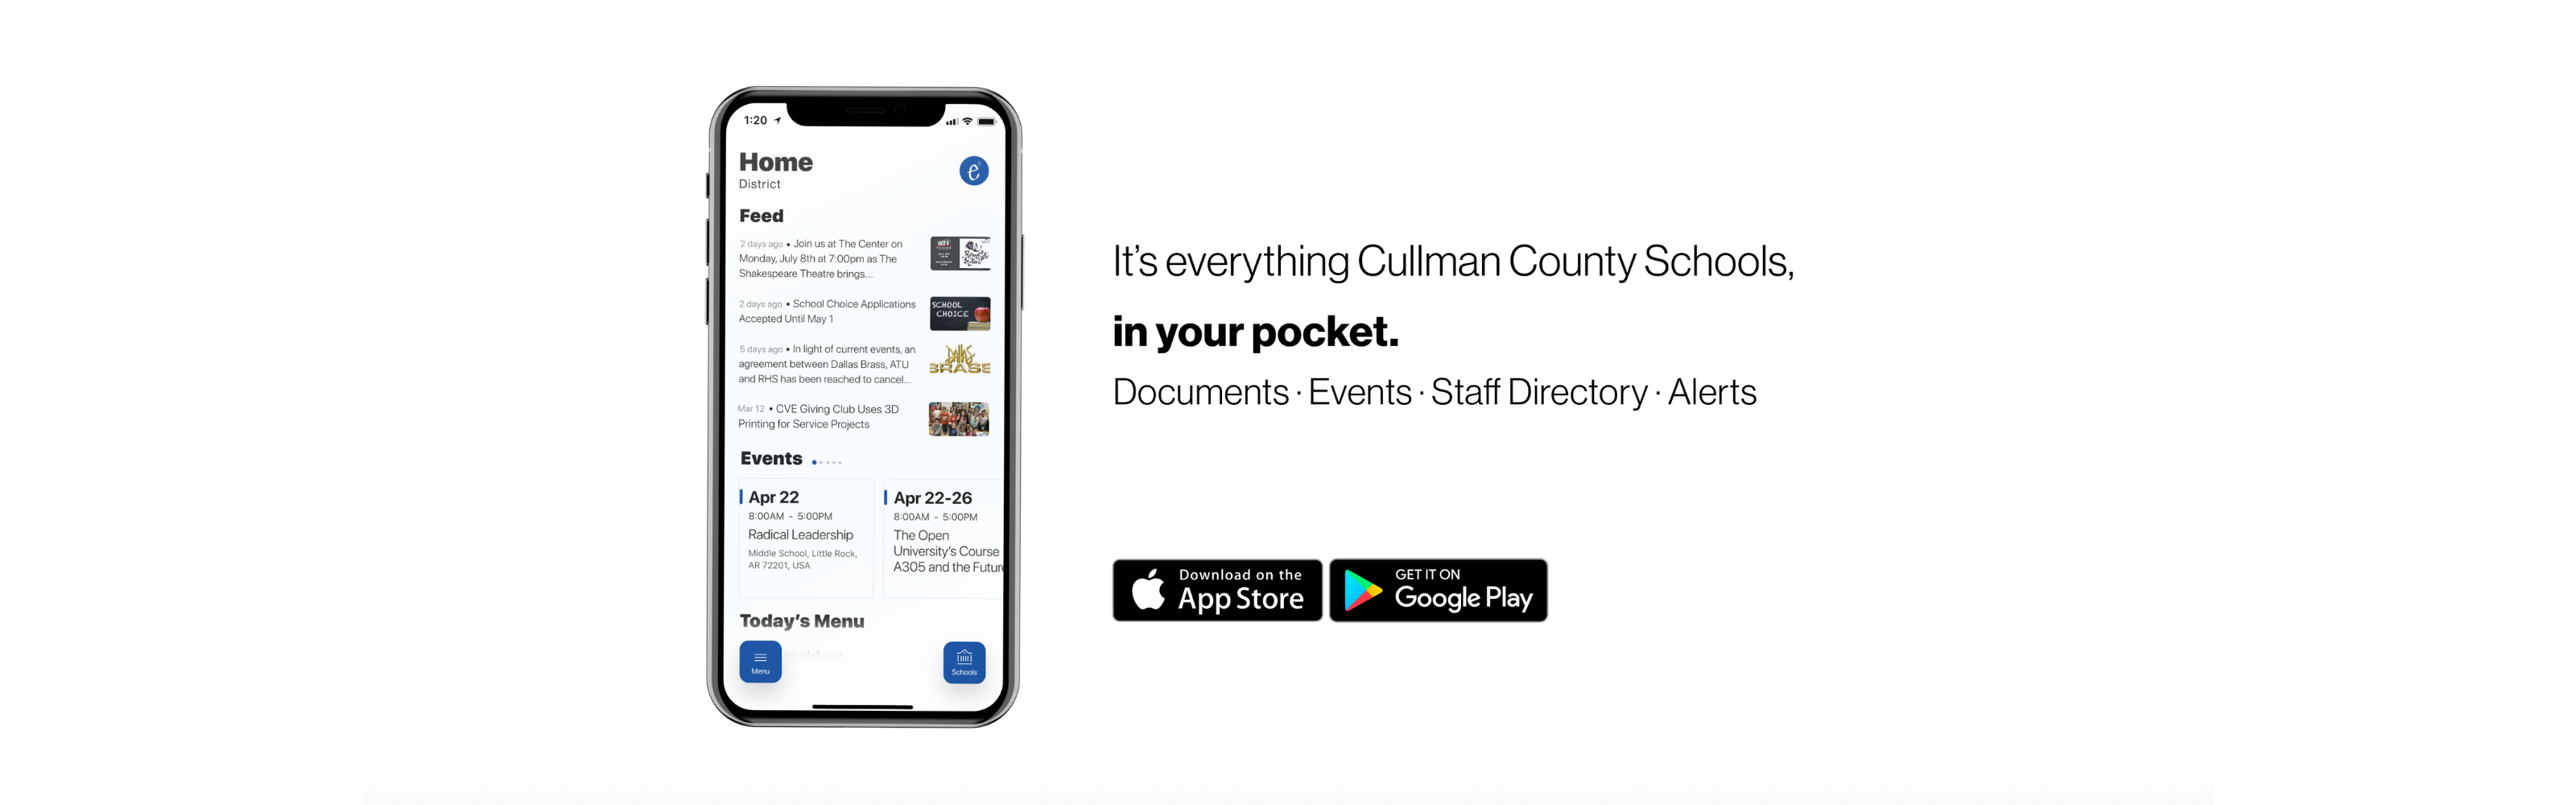 Cullman County Schools App Image